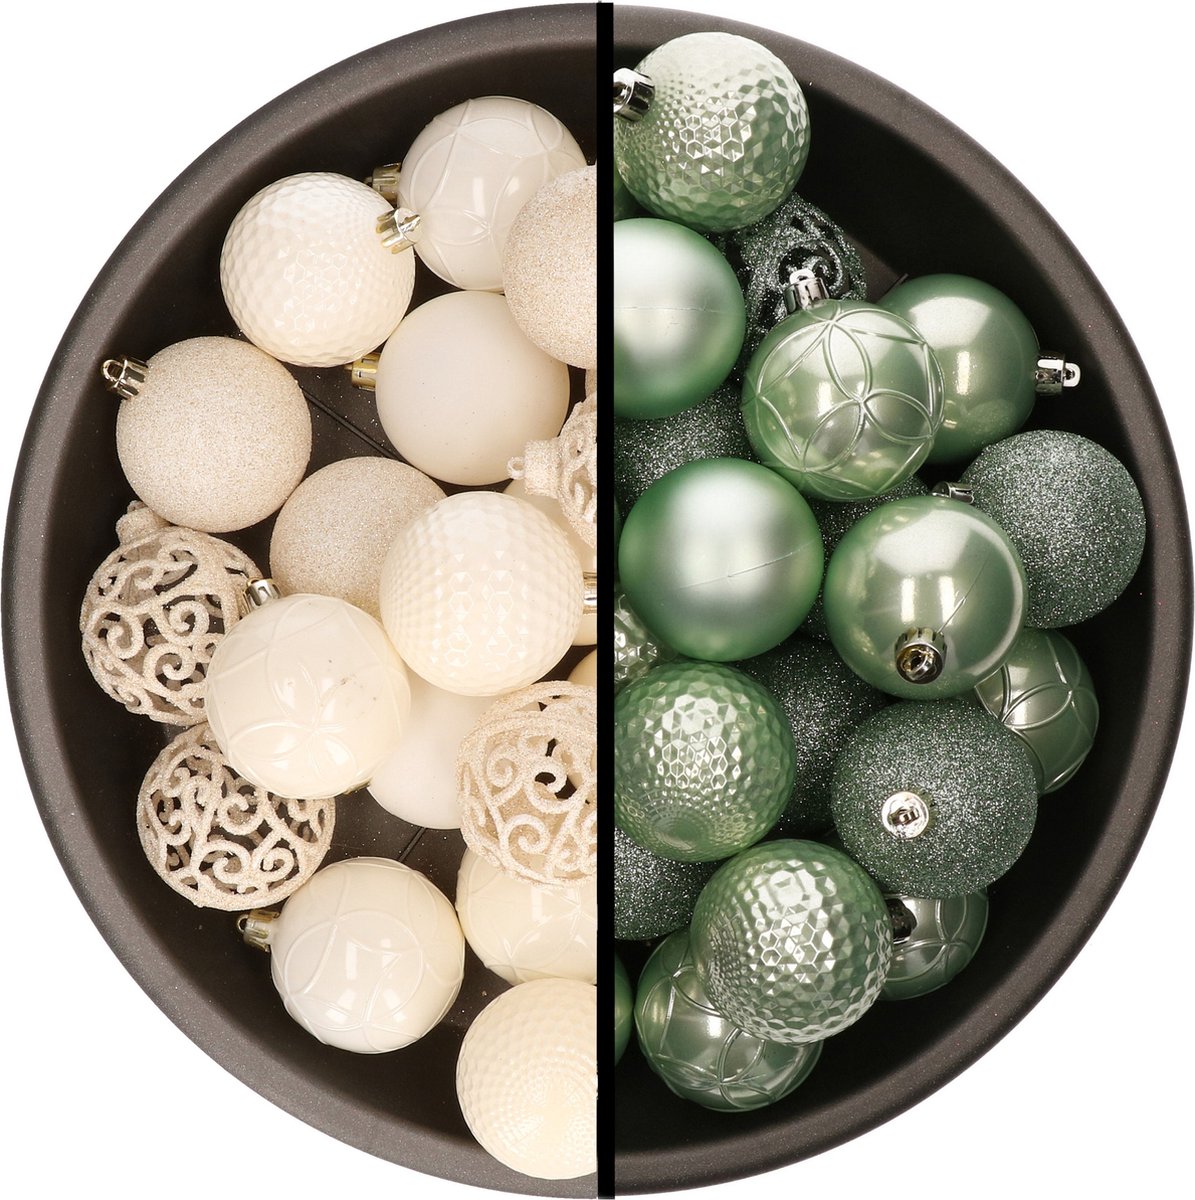 Kerstballen - 74x stuks - wol wit en mintgroen - 6 cm - kunststof